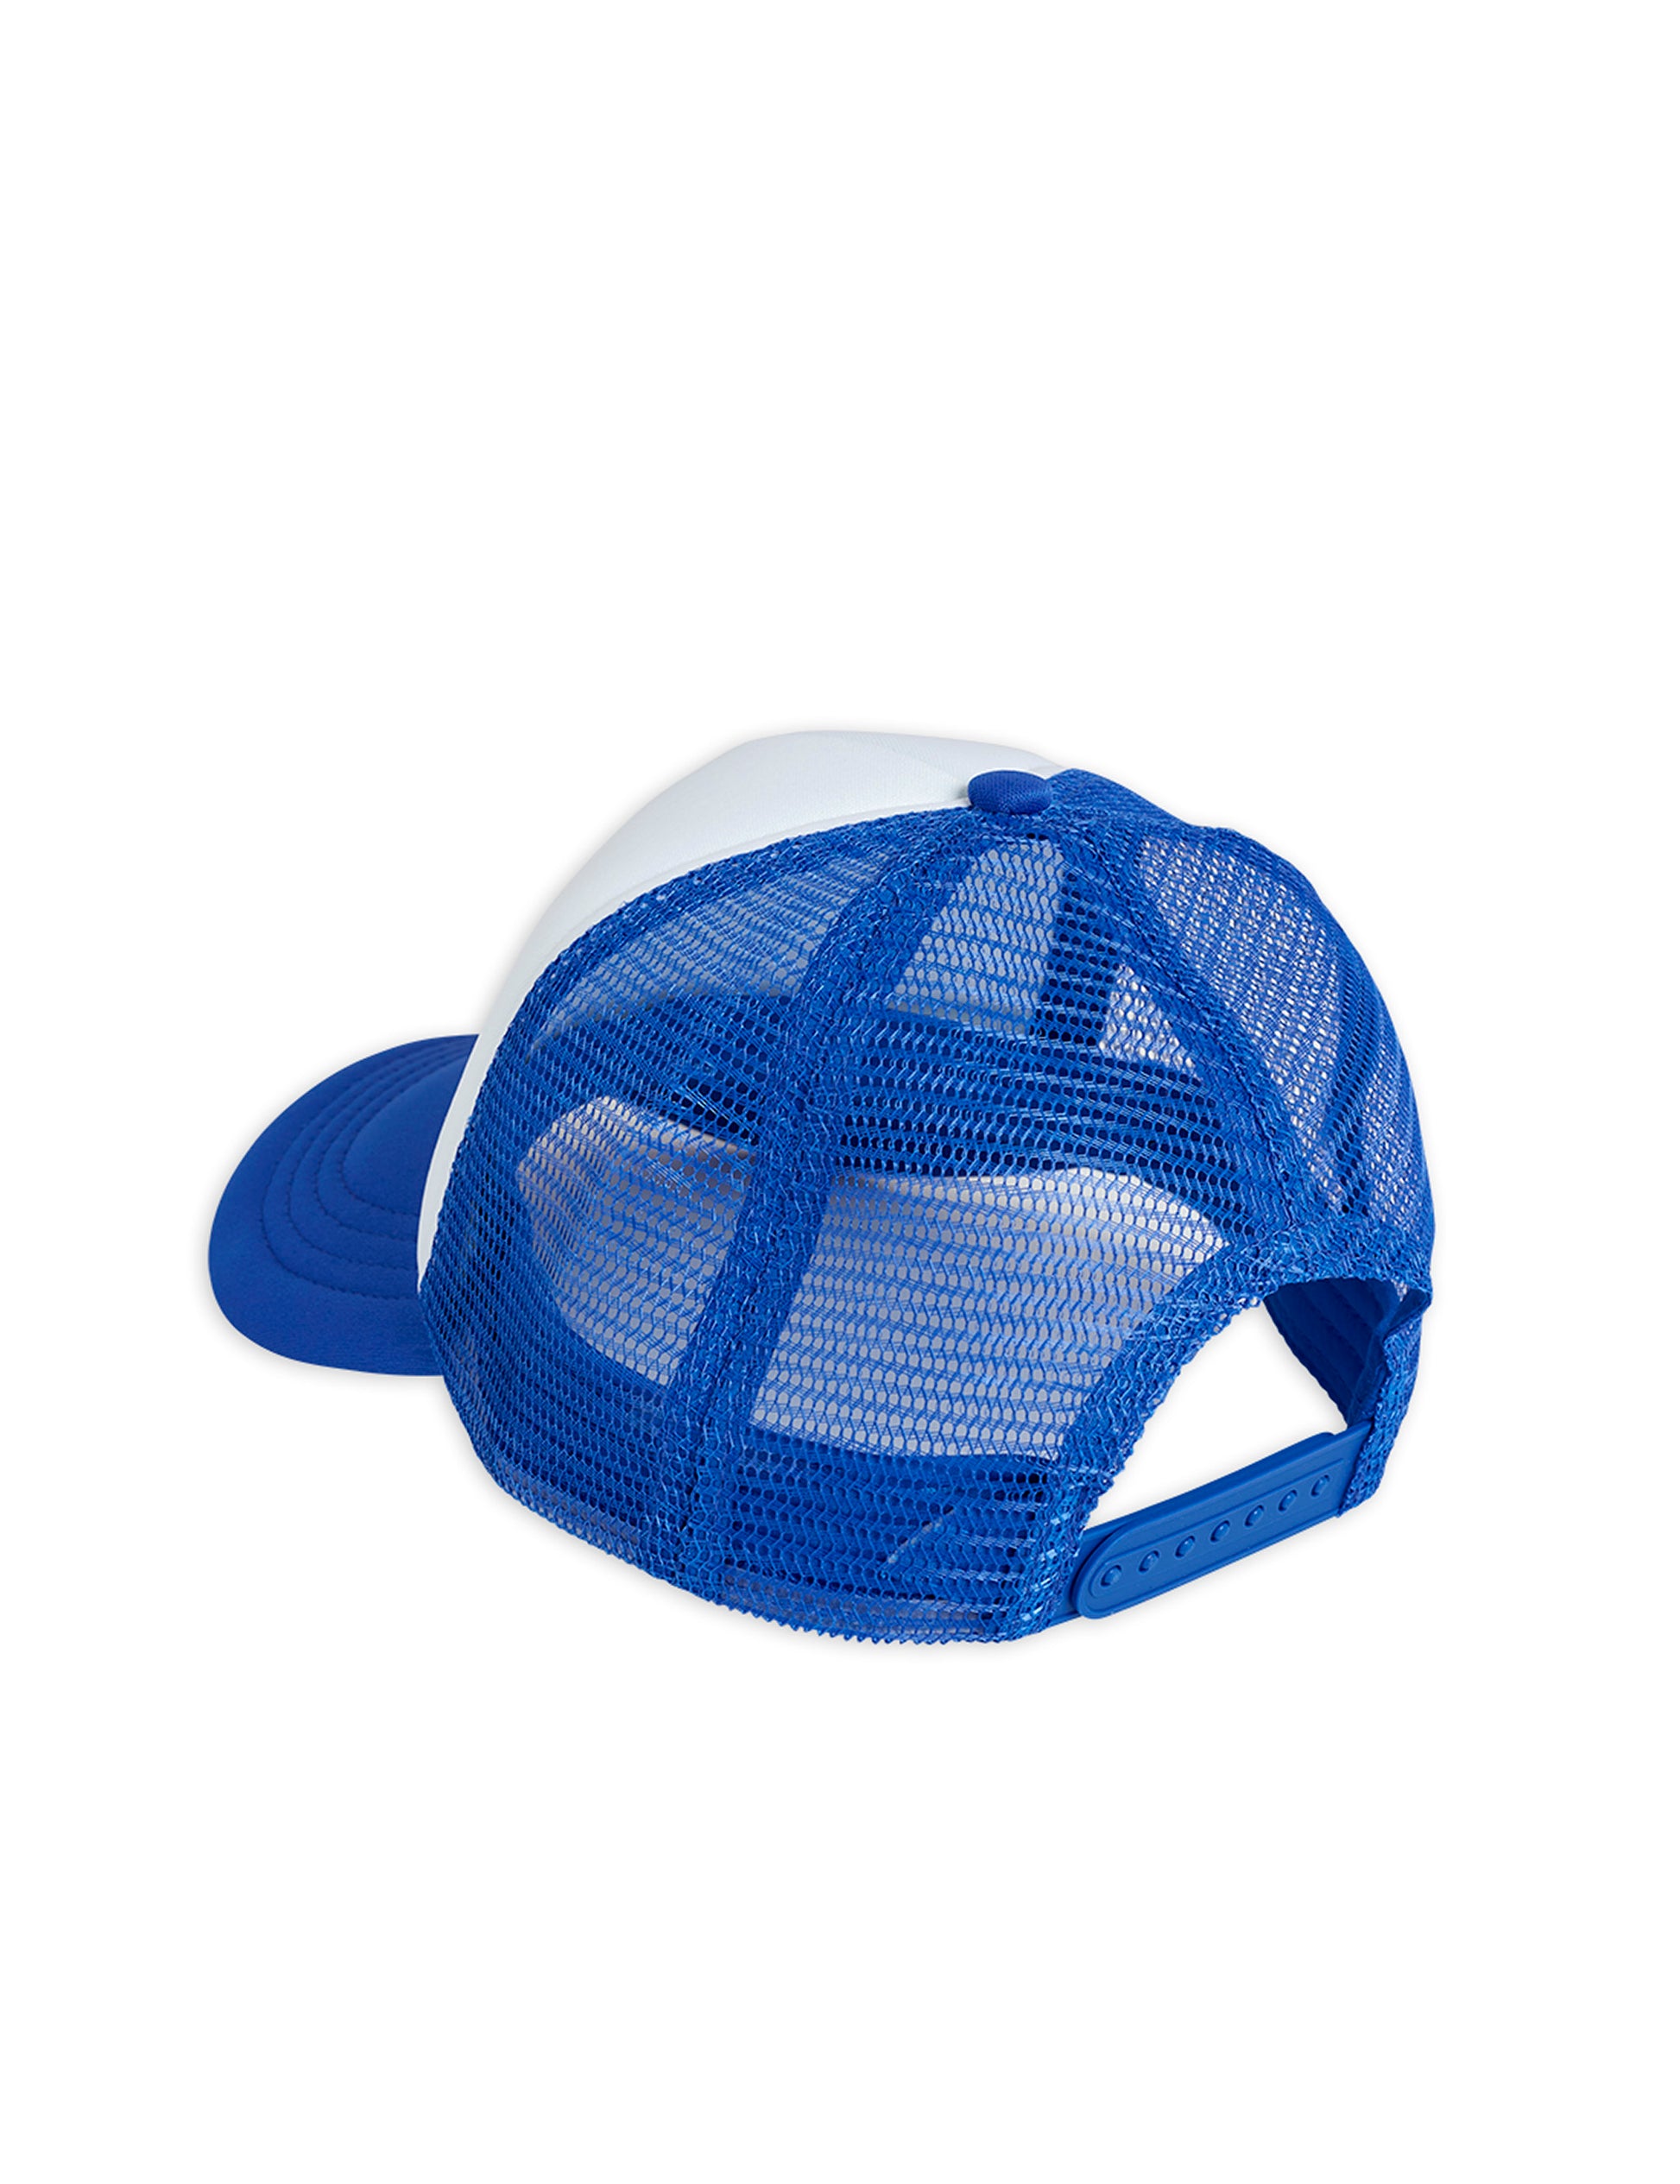 Trucker cap,Blue - Cémarose Canada